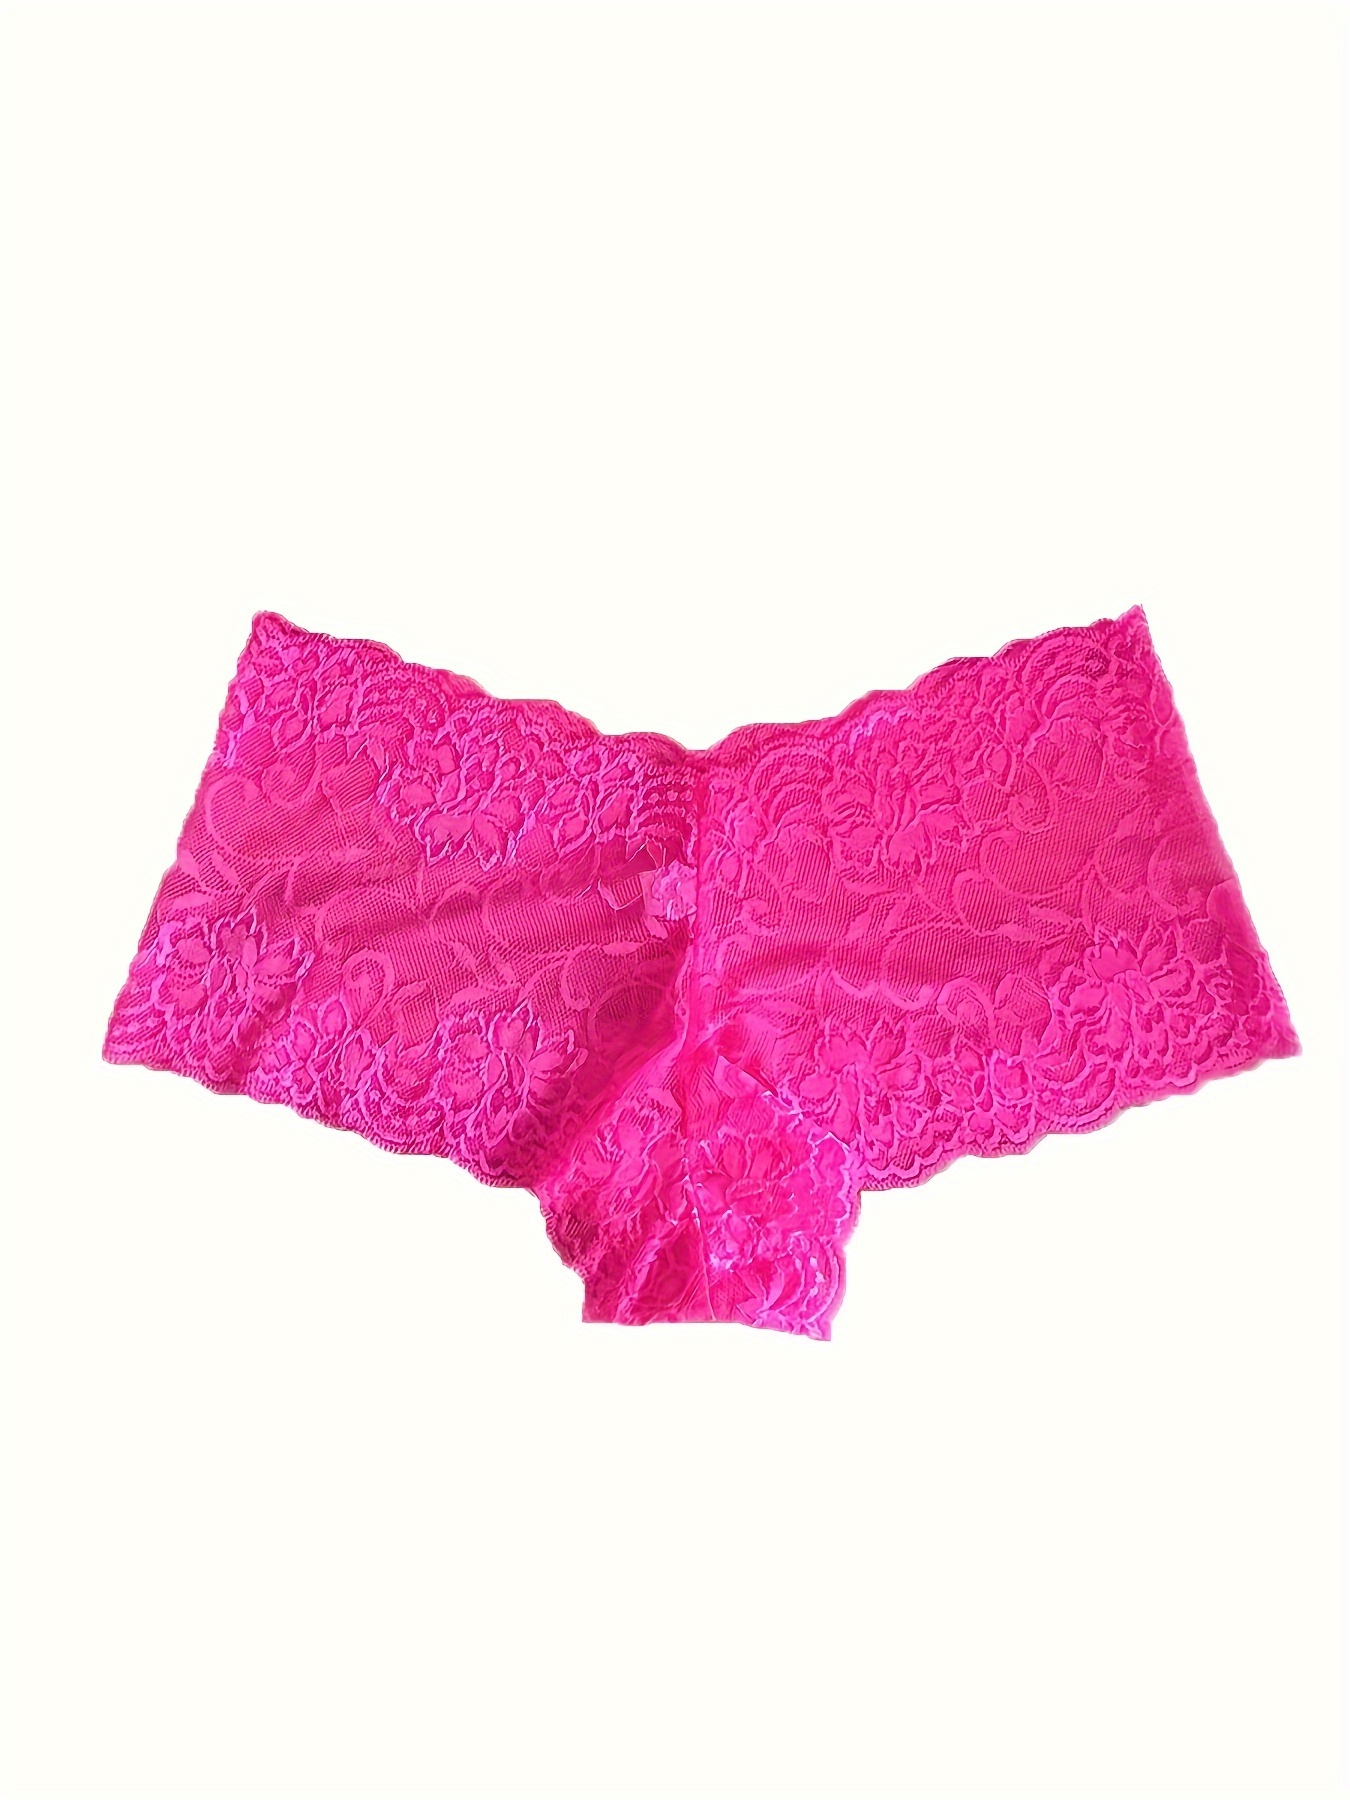 Pink lace underwear